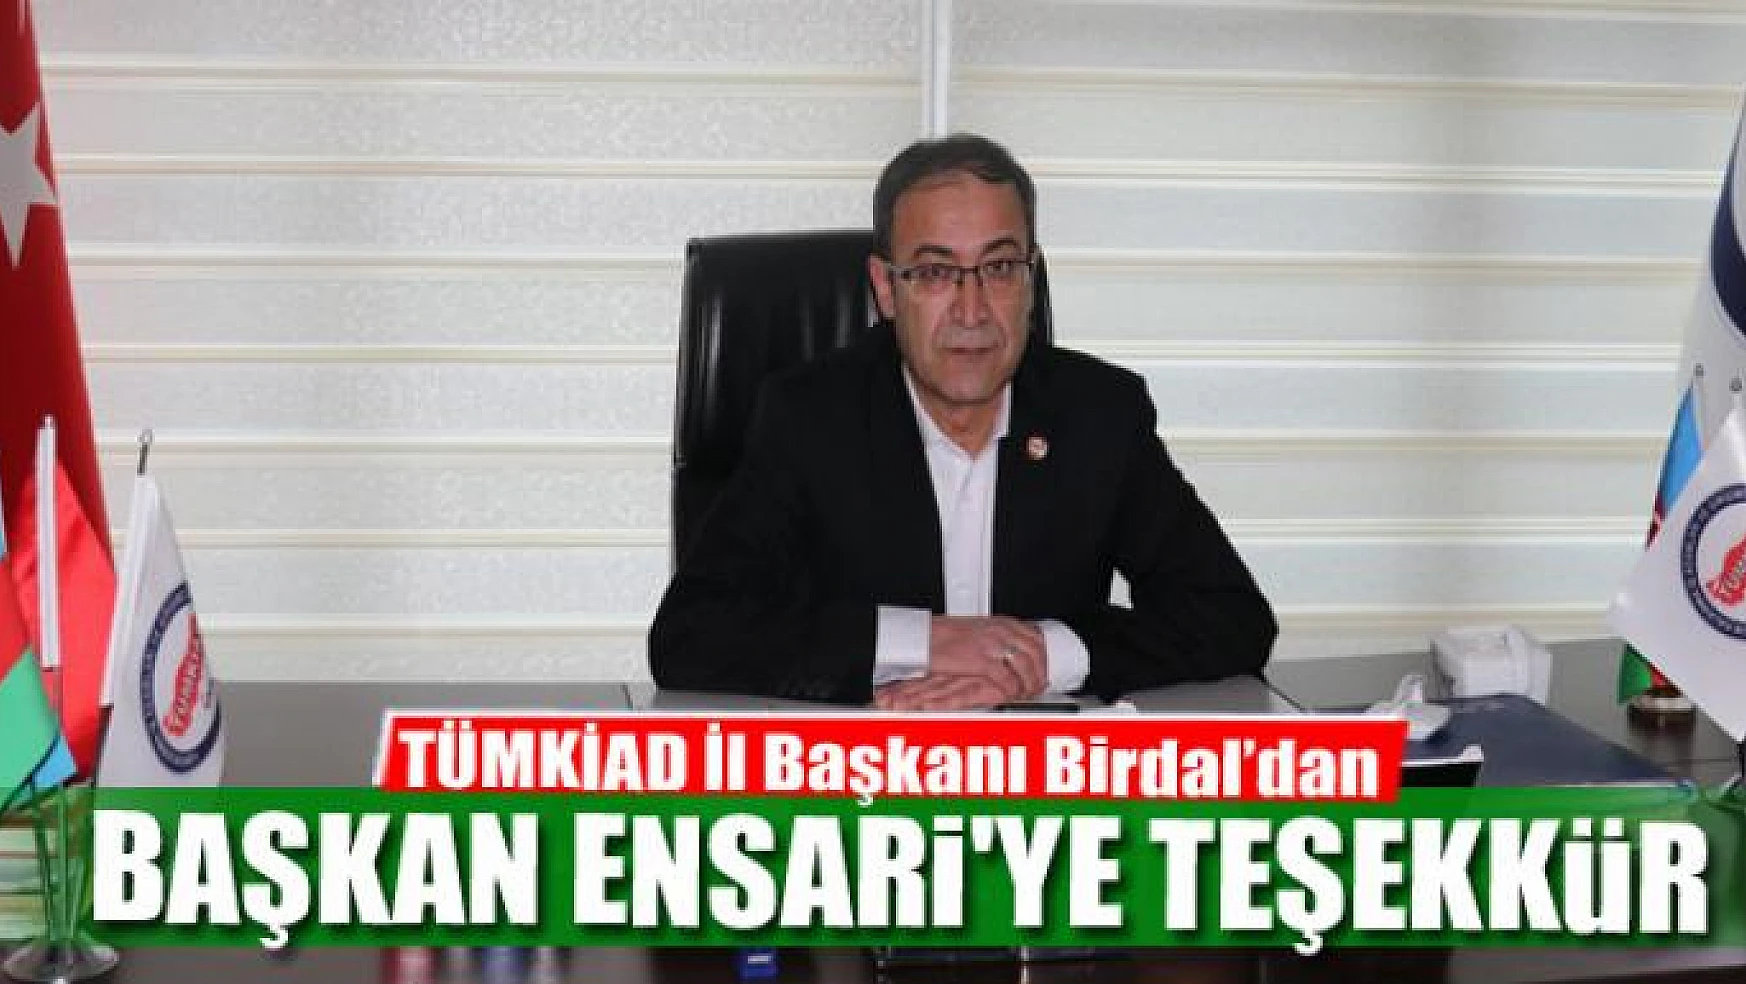 TÜMKİAD'dan Çaldıran Belediye Başkanı Ensari'ye teşekkür